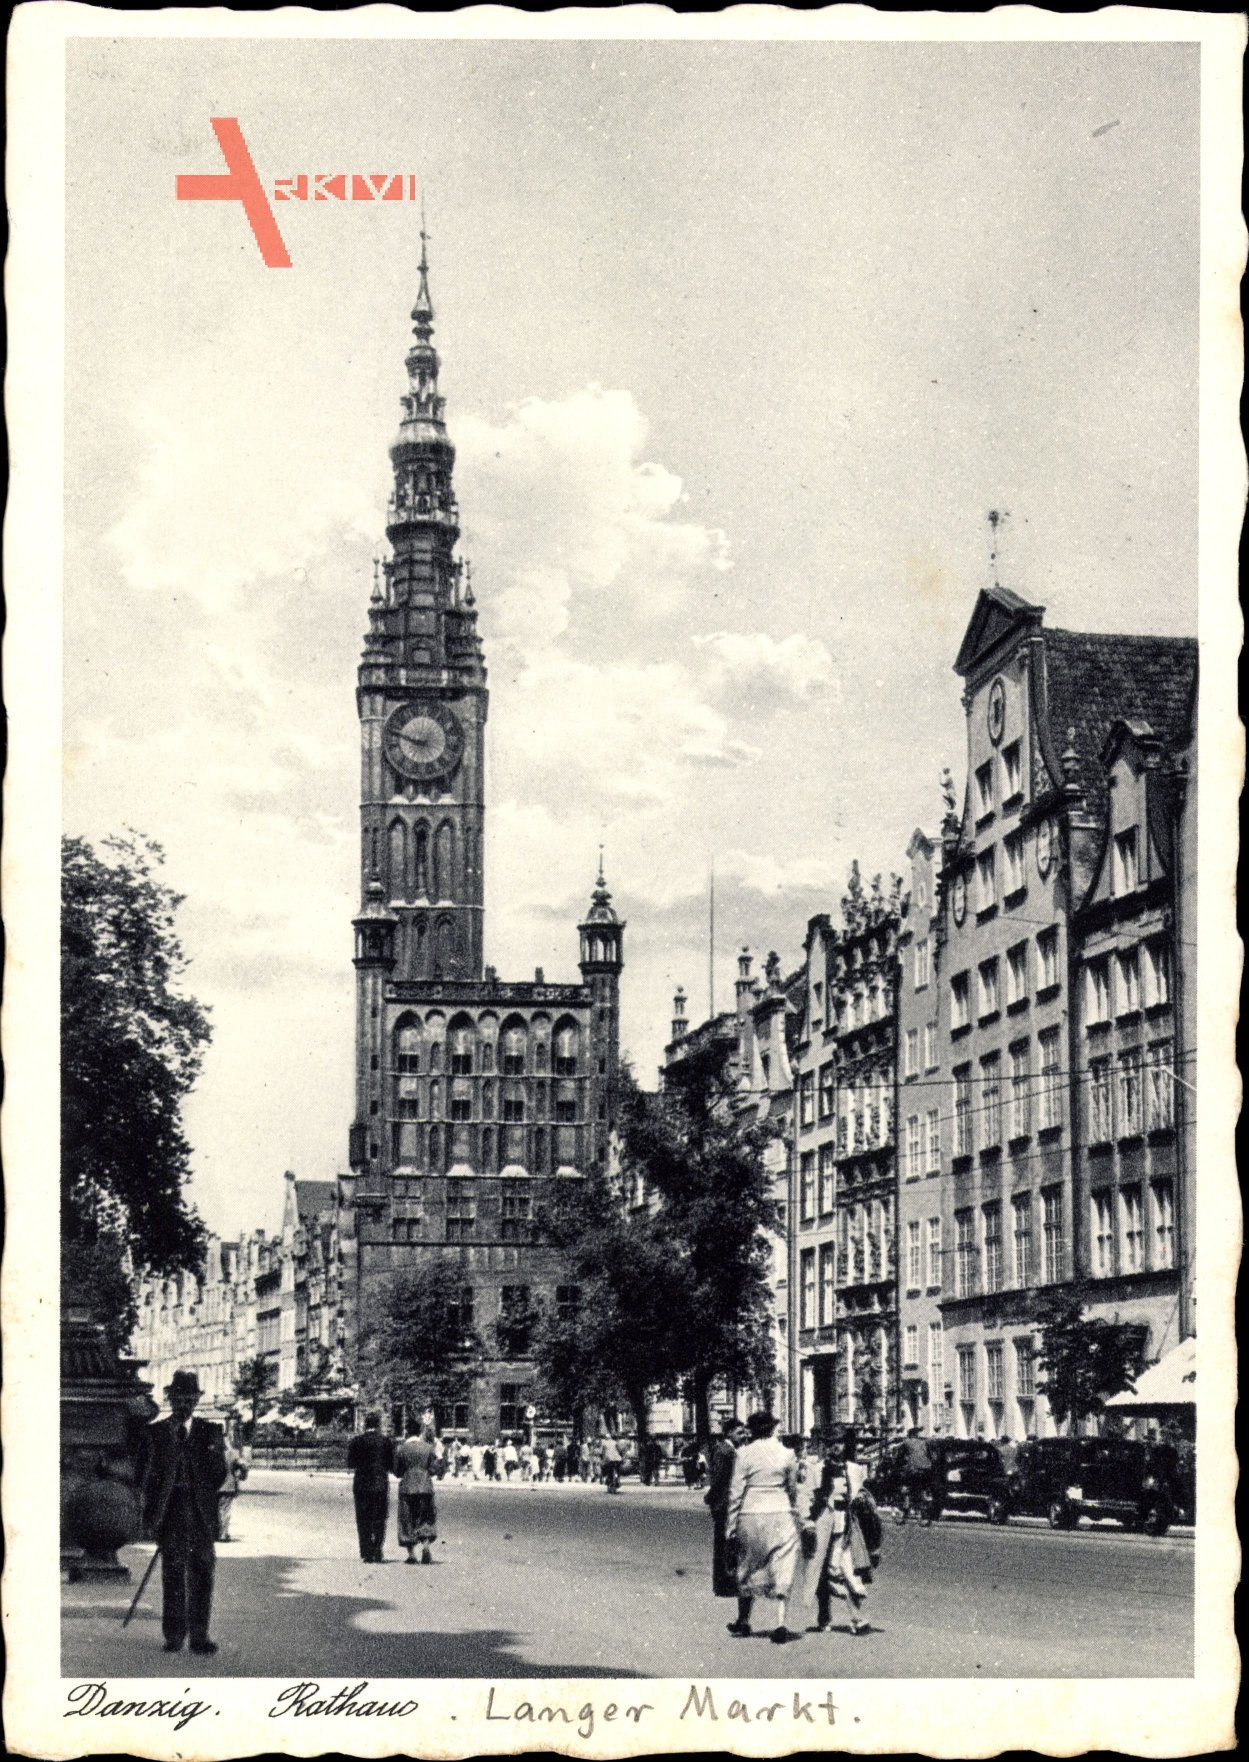 Gdańsk Danzig, Blick auf den Langen Markt mit Rathaus, Passanten